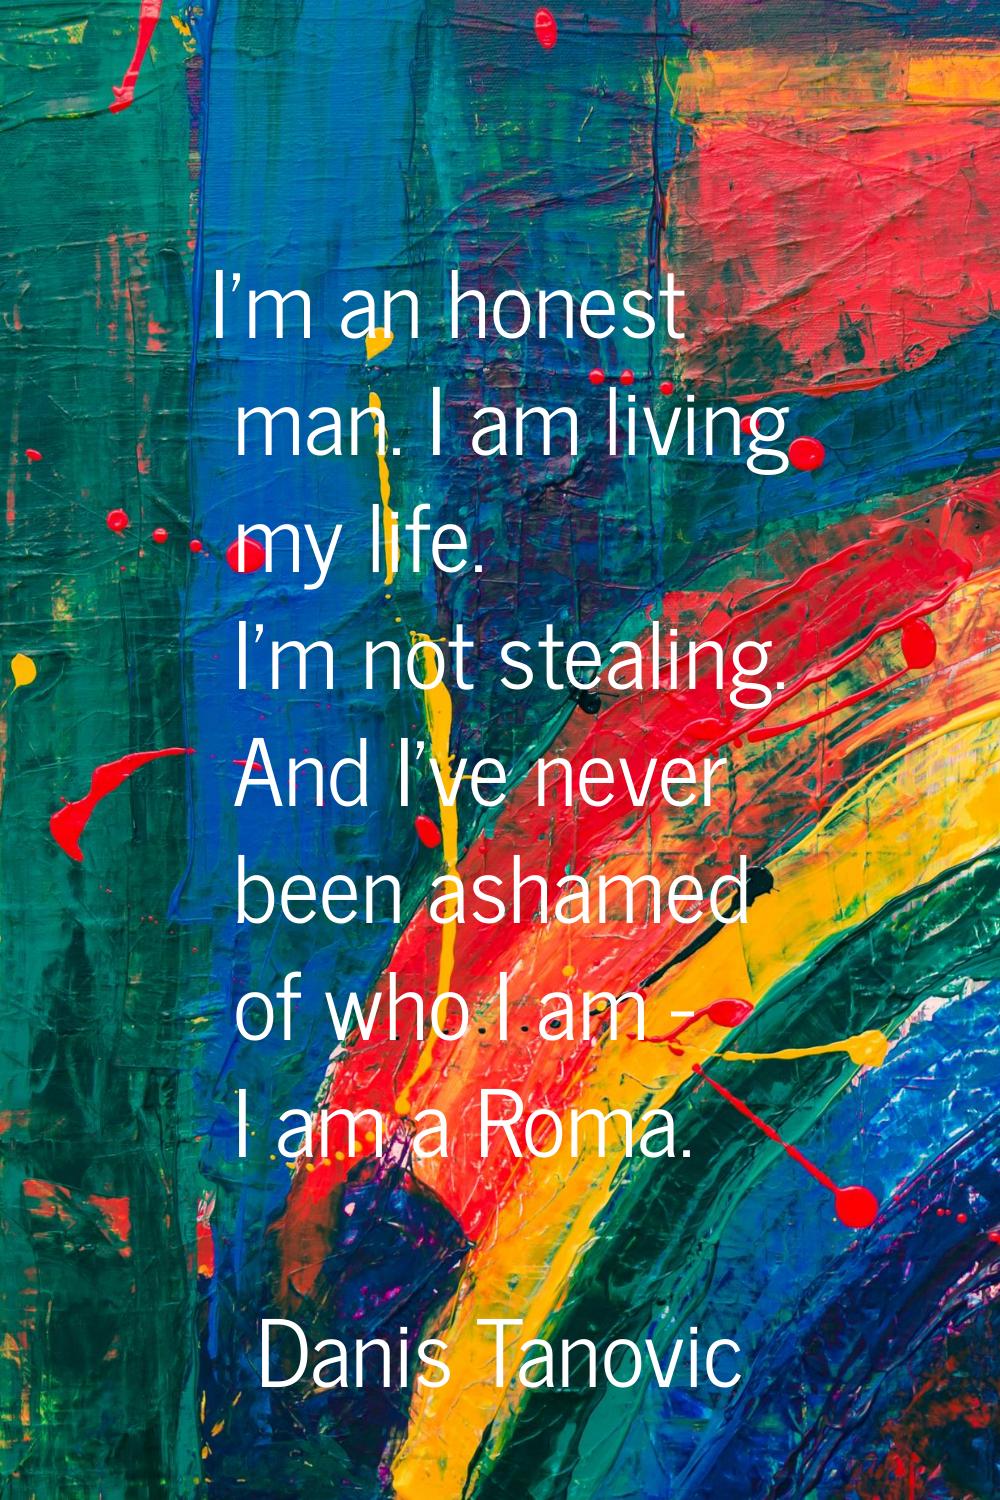 I'm an honest man. I am living my life. I'm not stealing. And I've never been ashamed of who I am -